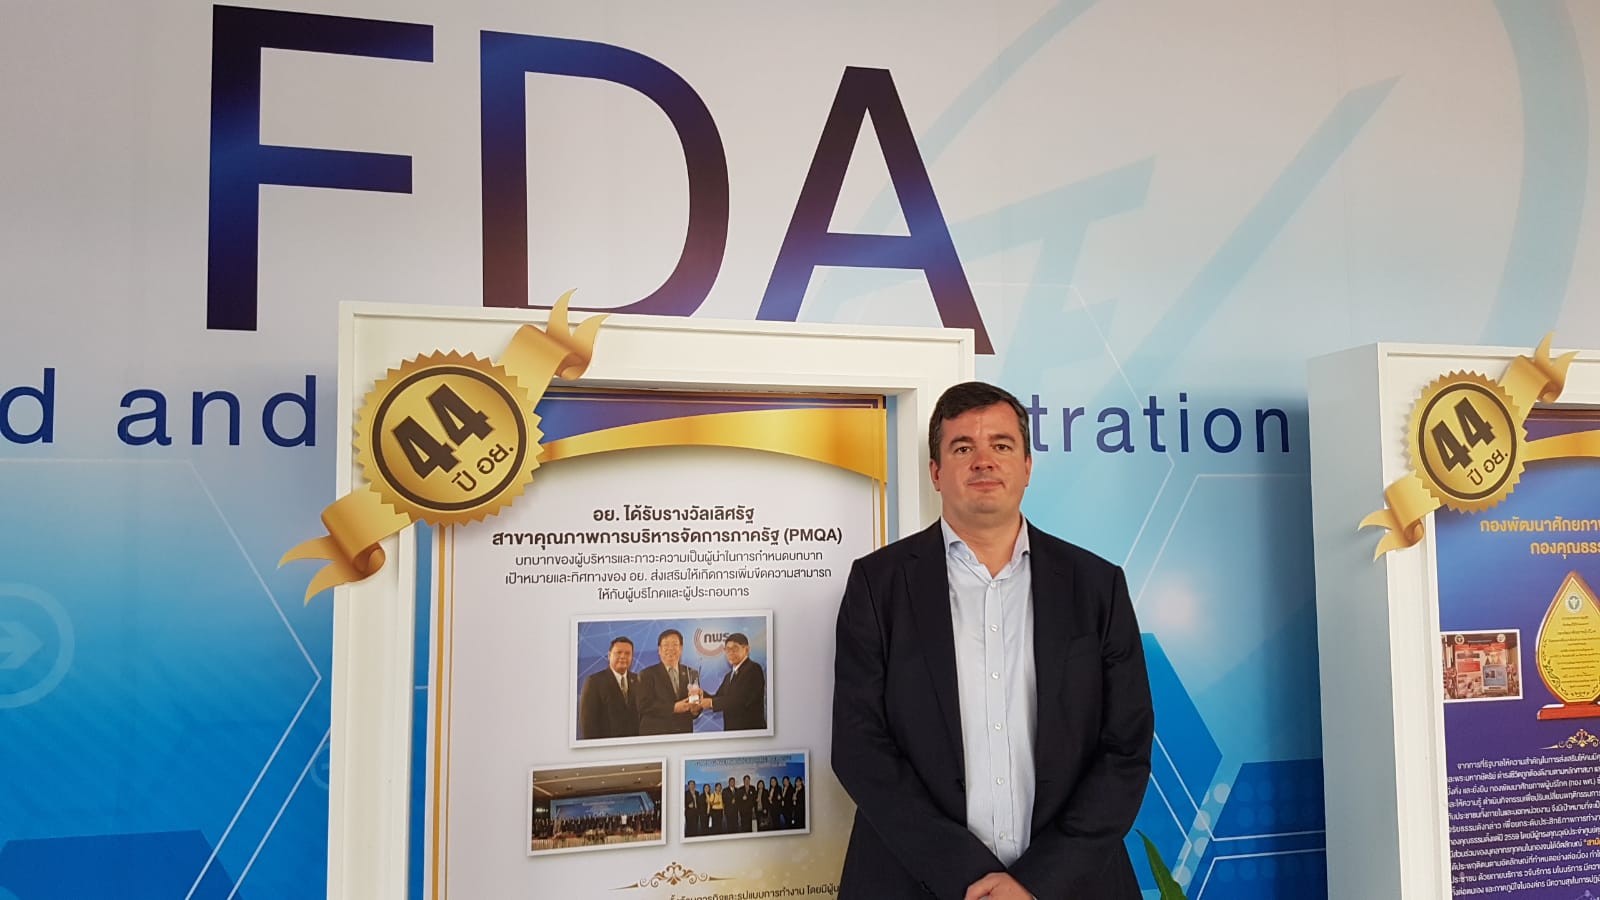 Robin Roy Krigslund-Hansen visiting FDA Thailand in 2019